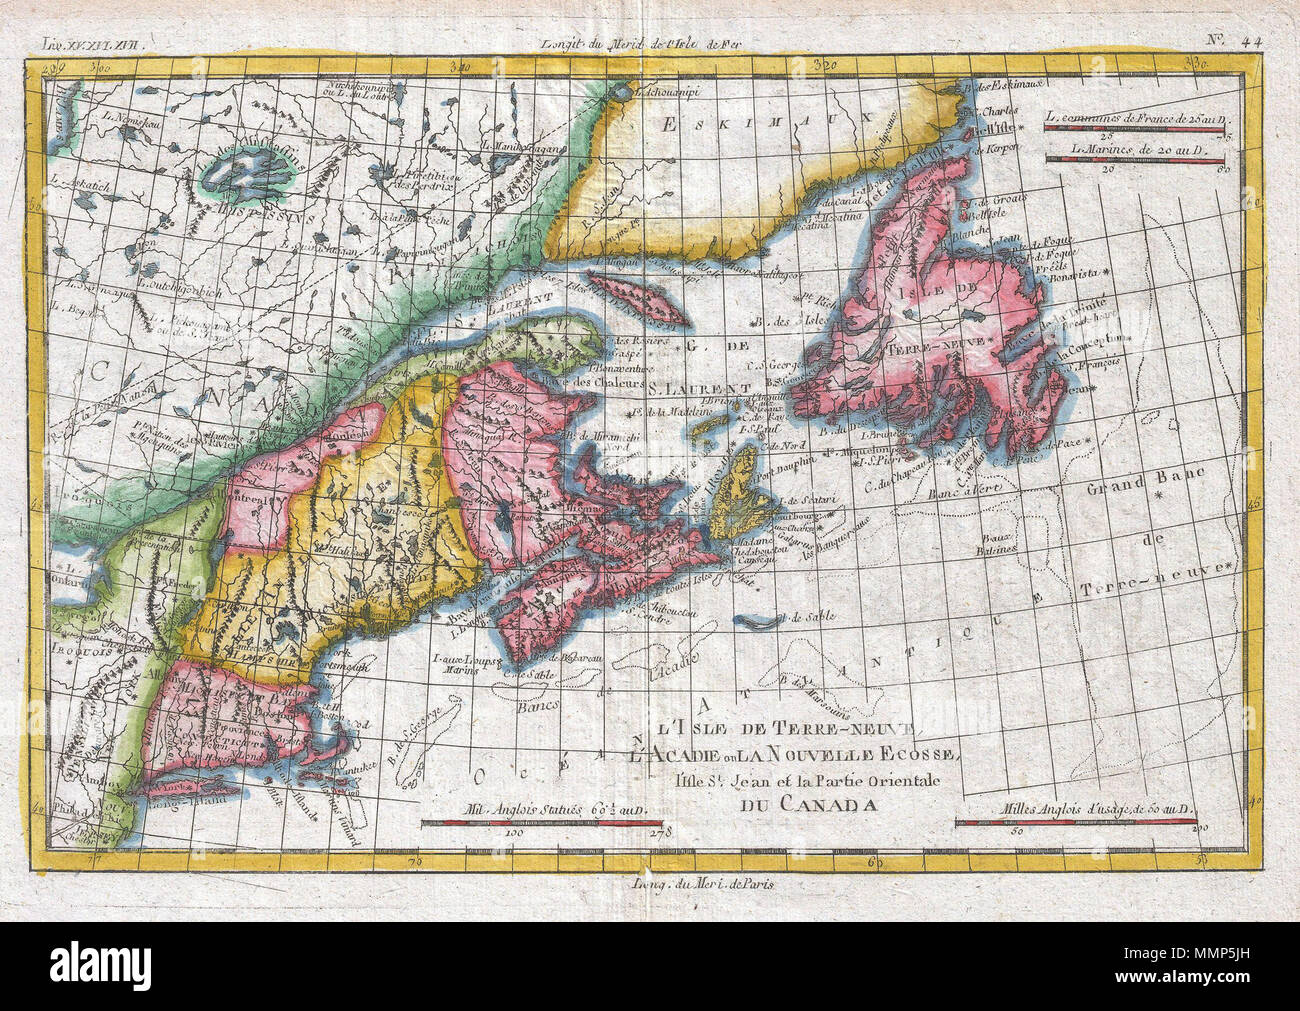 . Englisch: Ein schönes Beispiel für Rigobert Bonne und Guilleme Raynal's 1780 Karte von der nordöstlichen Vereinigten Staaten und Kanada. Diese sehr detaillierte Karte deckt die Ostküste der Vereinigten Staaten von ein Teil von New Jersey und New York im Süden so weit nördlich wie der Kanadische Maritime Provinzen Nova Scotia, New Brunswick und Neufundland. Erkennt Martha's Vineyard und Nantucket Island. Zeigt alle wichtigen Häfen, Häfen, Buchten und Inseln. Entlang der Küste, wie den Grand Banks und die Fischerei aus Cape Cod sind dargestellt, als dieser Bereich war sehr wichtig für den Norden bin Stockfoto